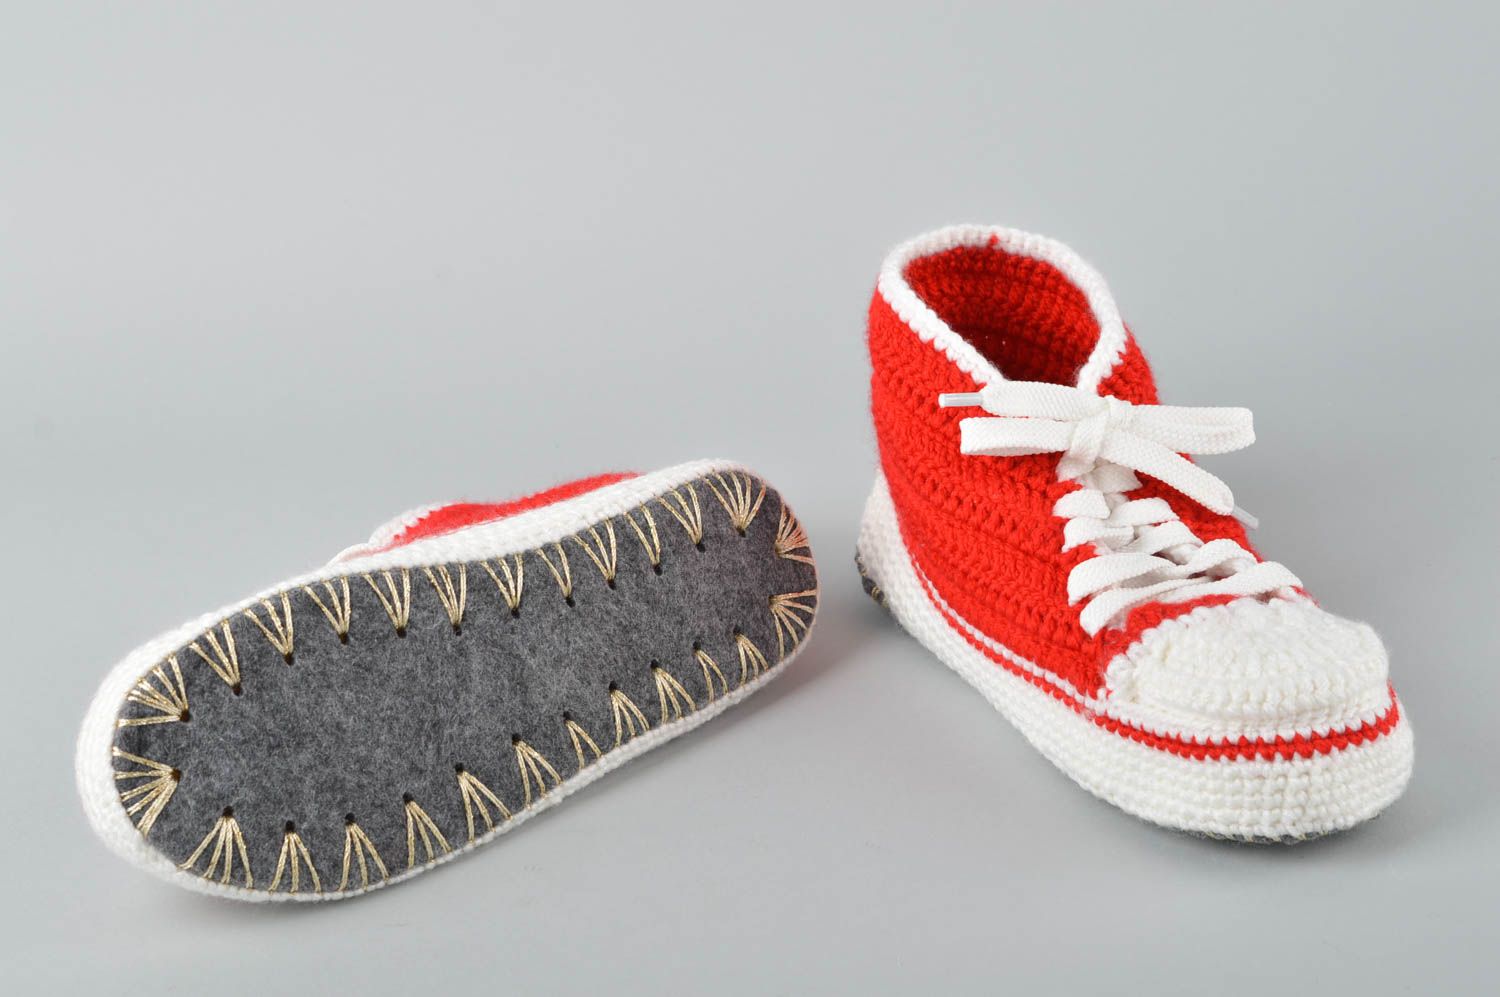 Crochet slippers for men handmade house shoes men's slippers gifts for him photo 2